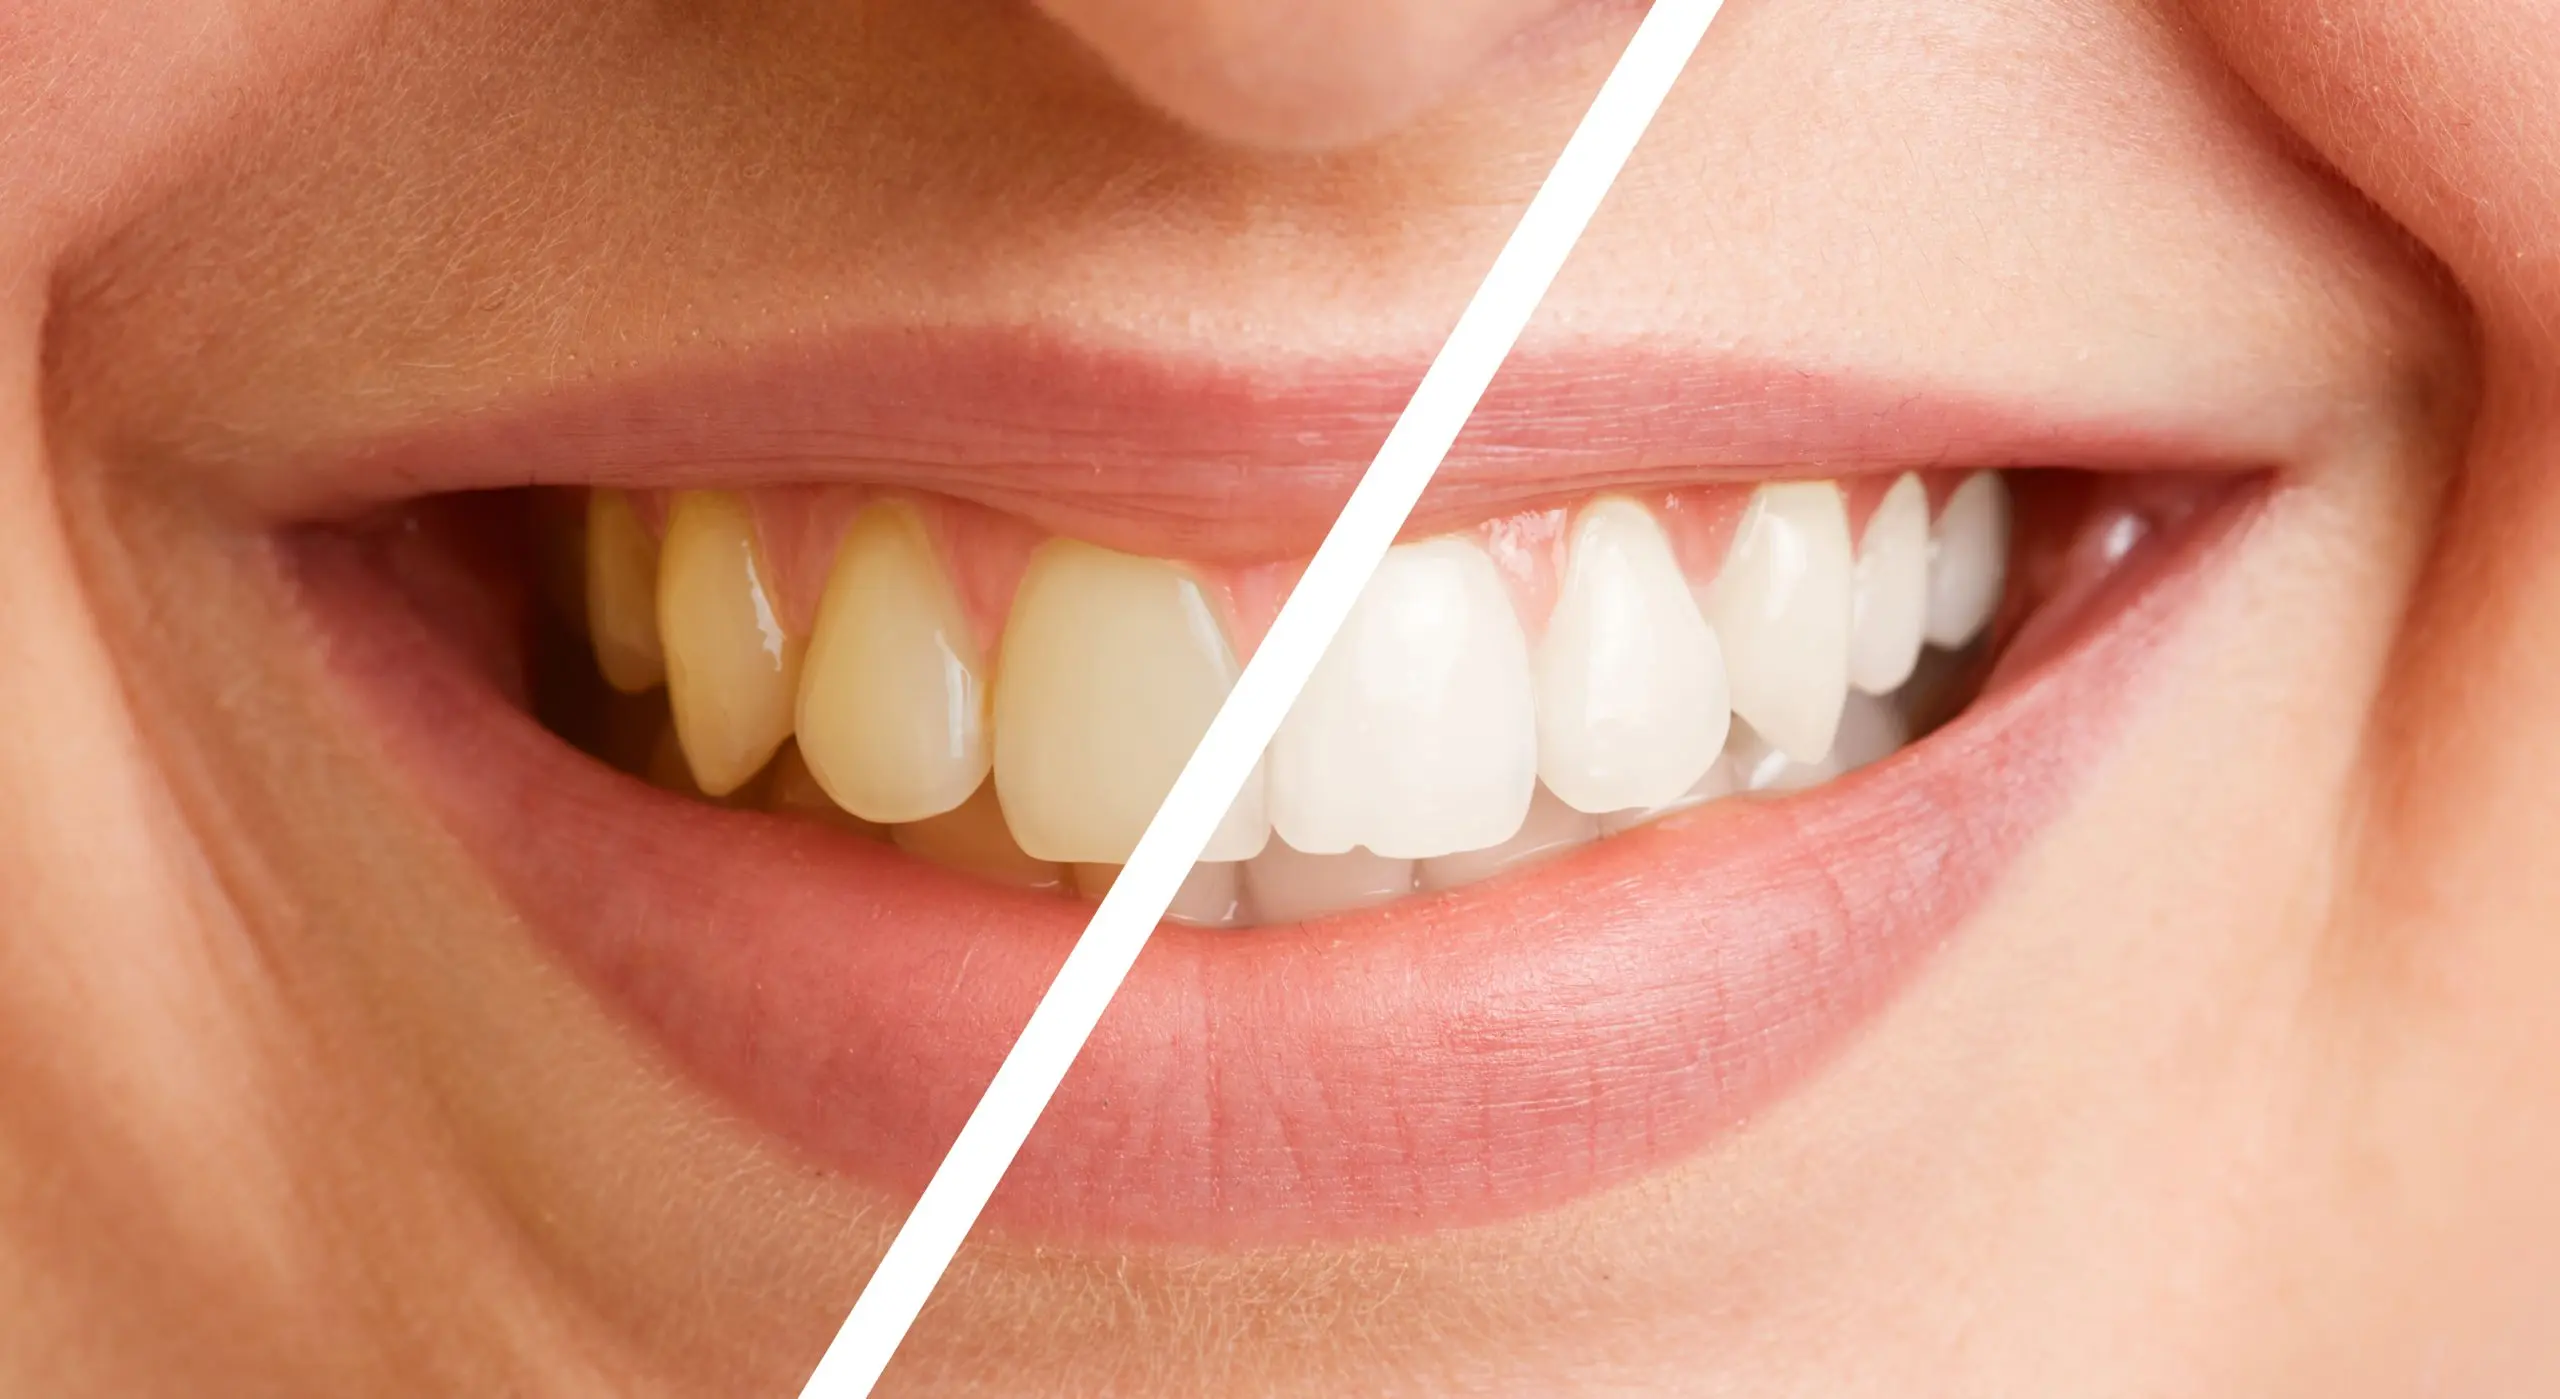 limpieza de dientes - Qué tipo de limpieza dental hay